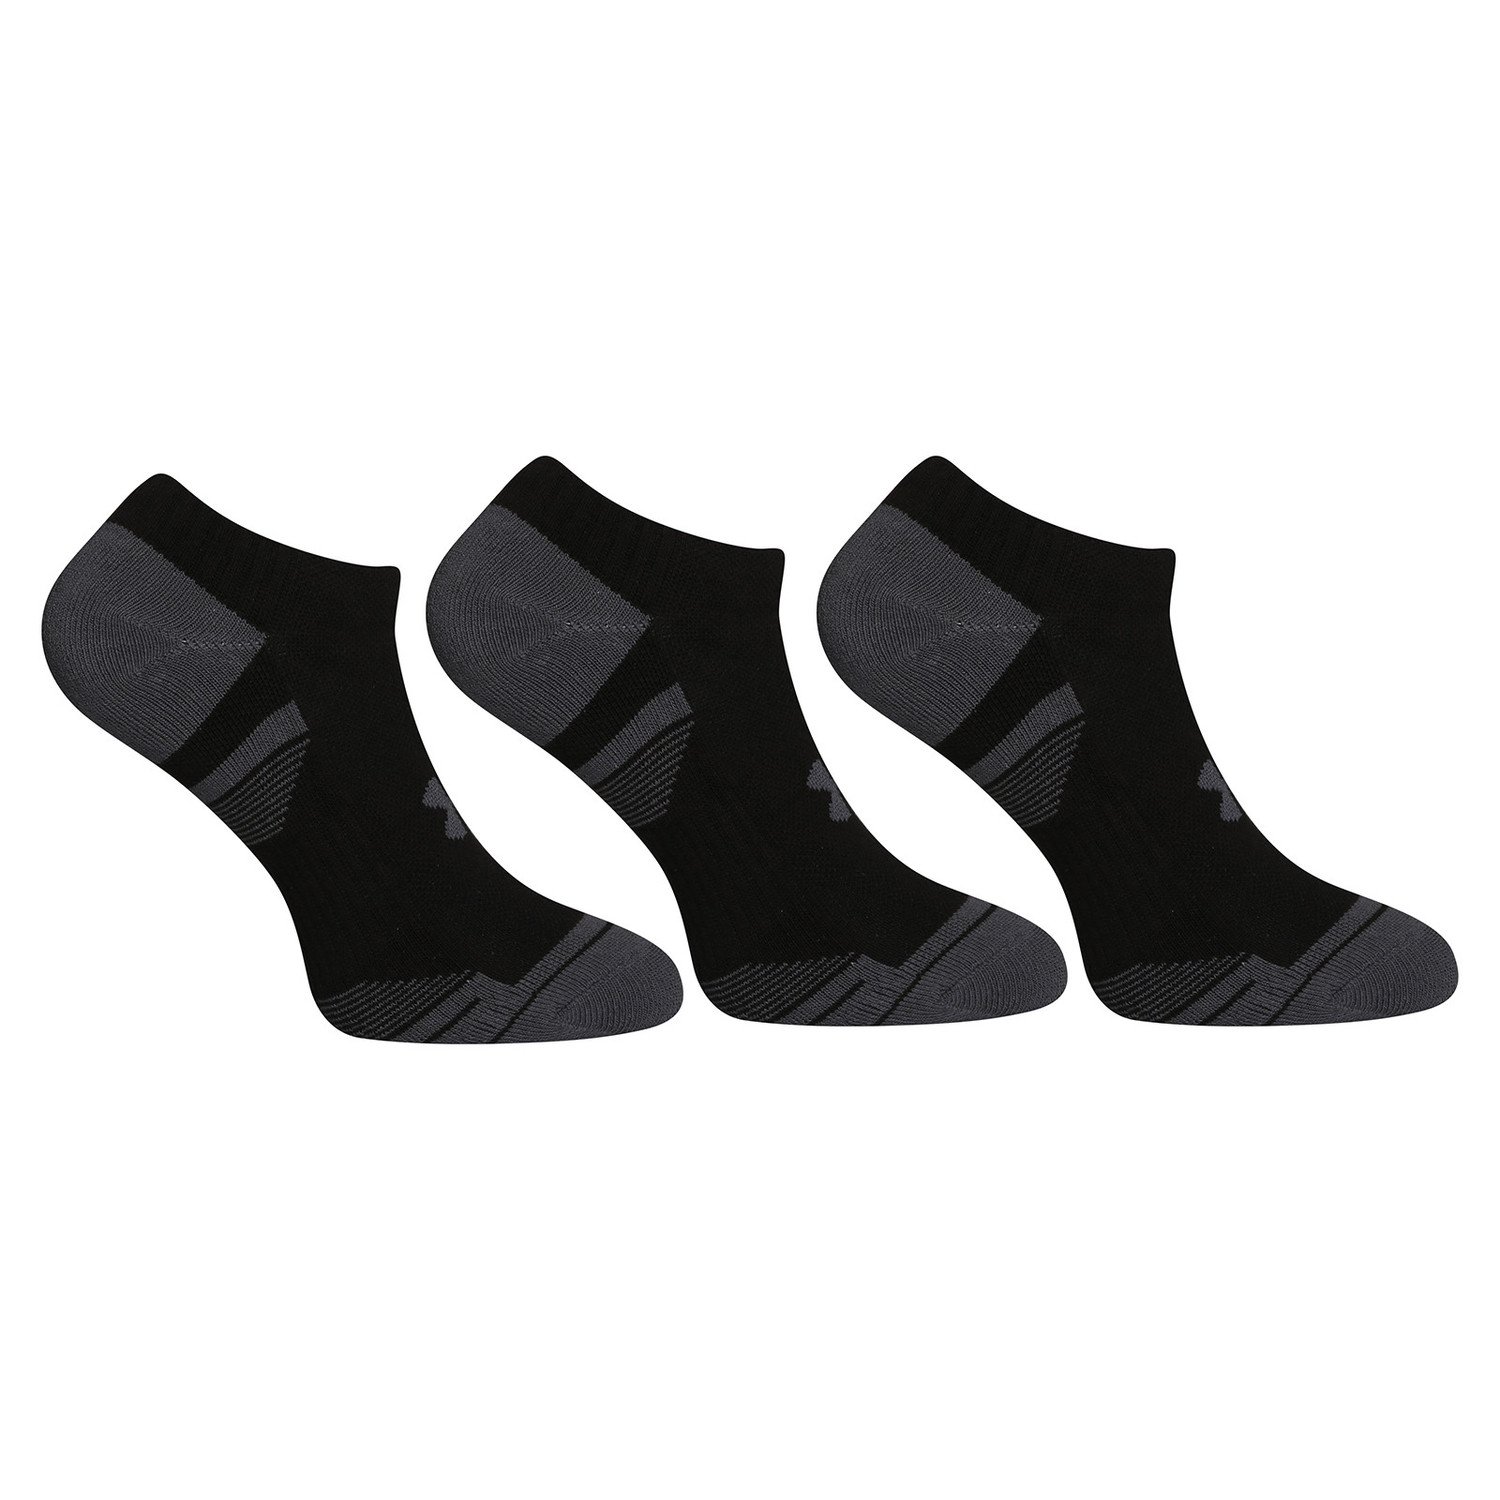 3PACK ponožky Under Armour černé (1379526 001) L